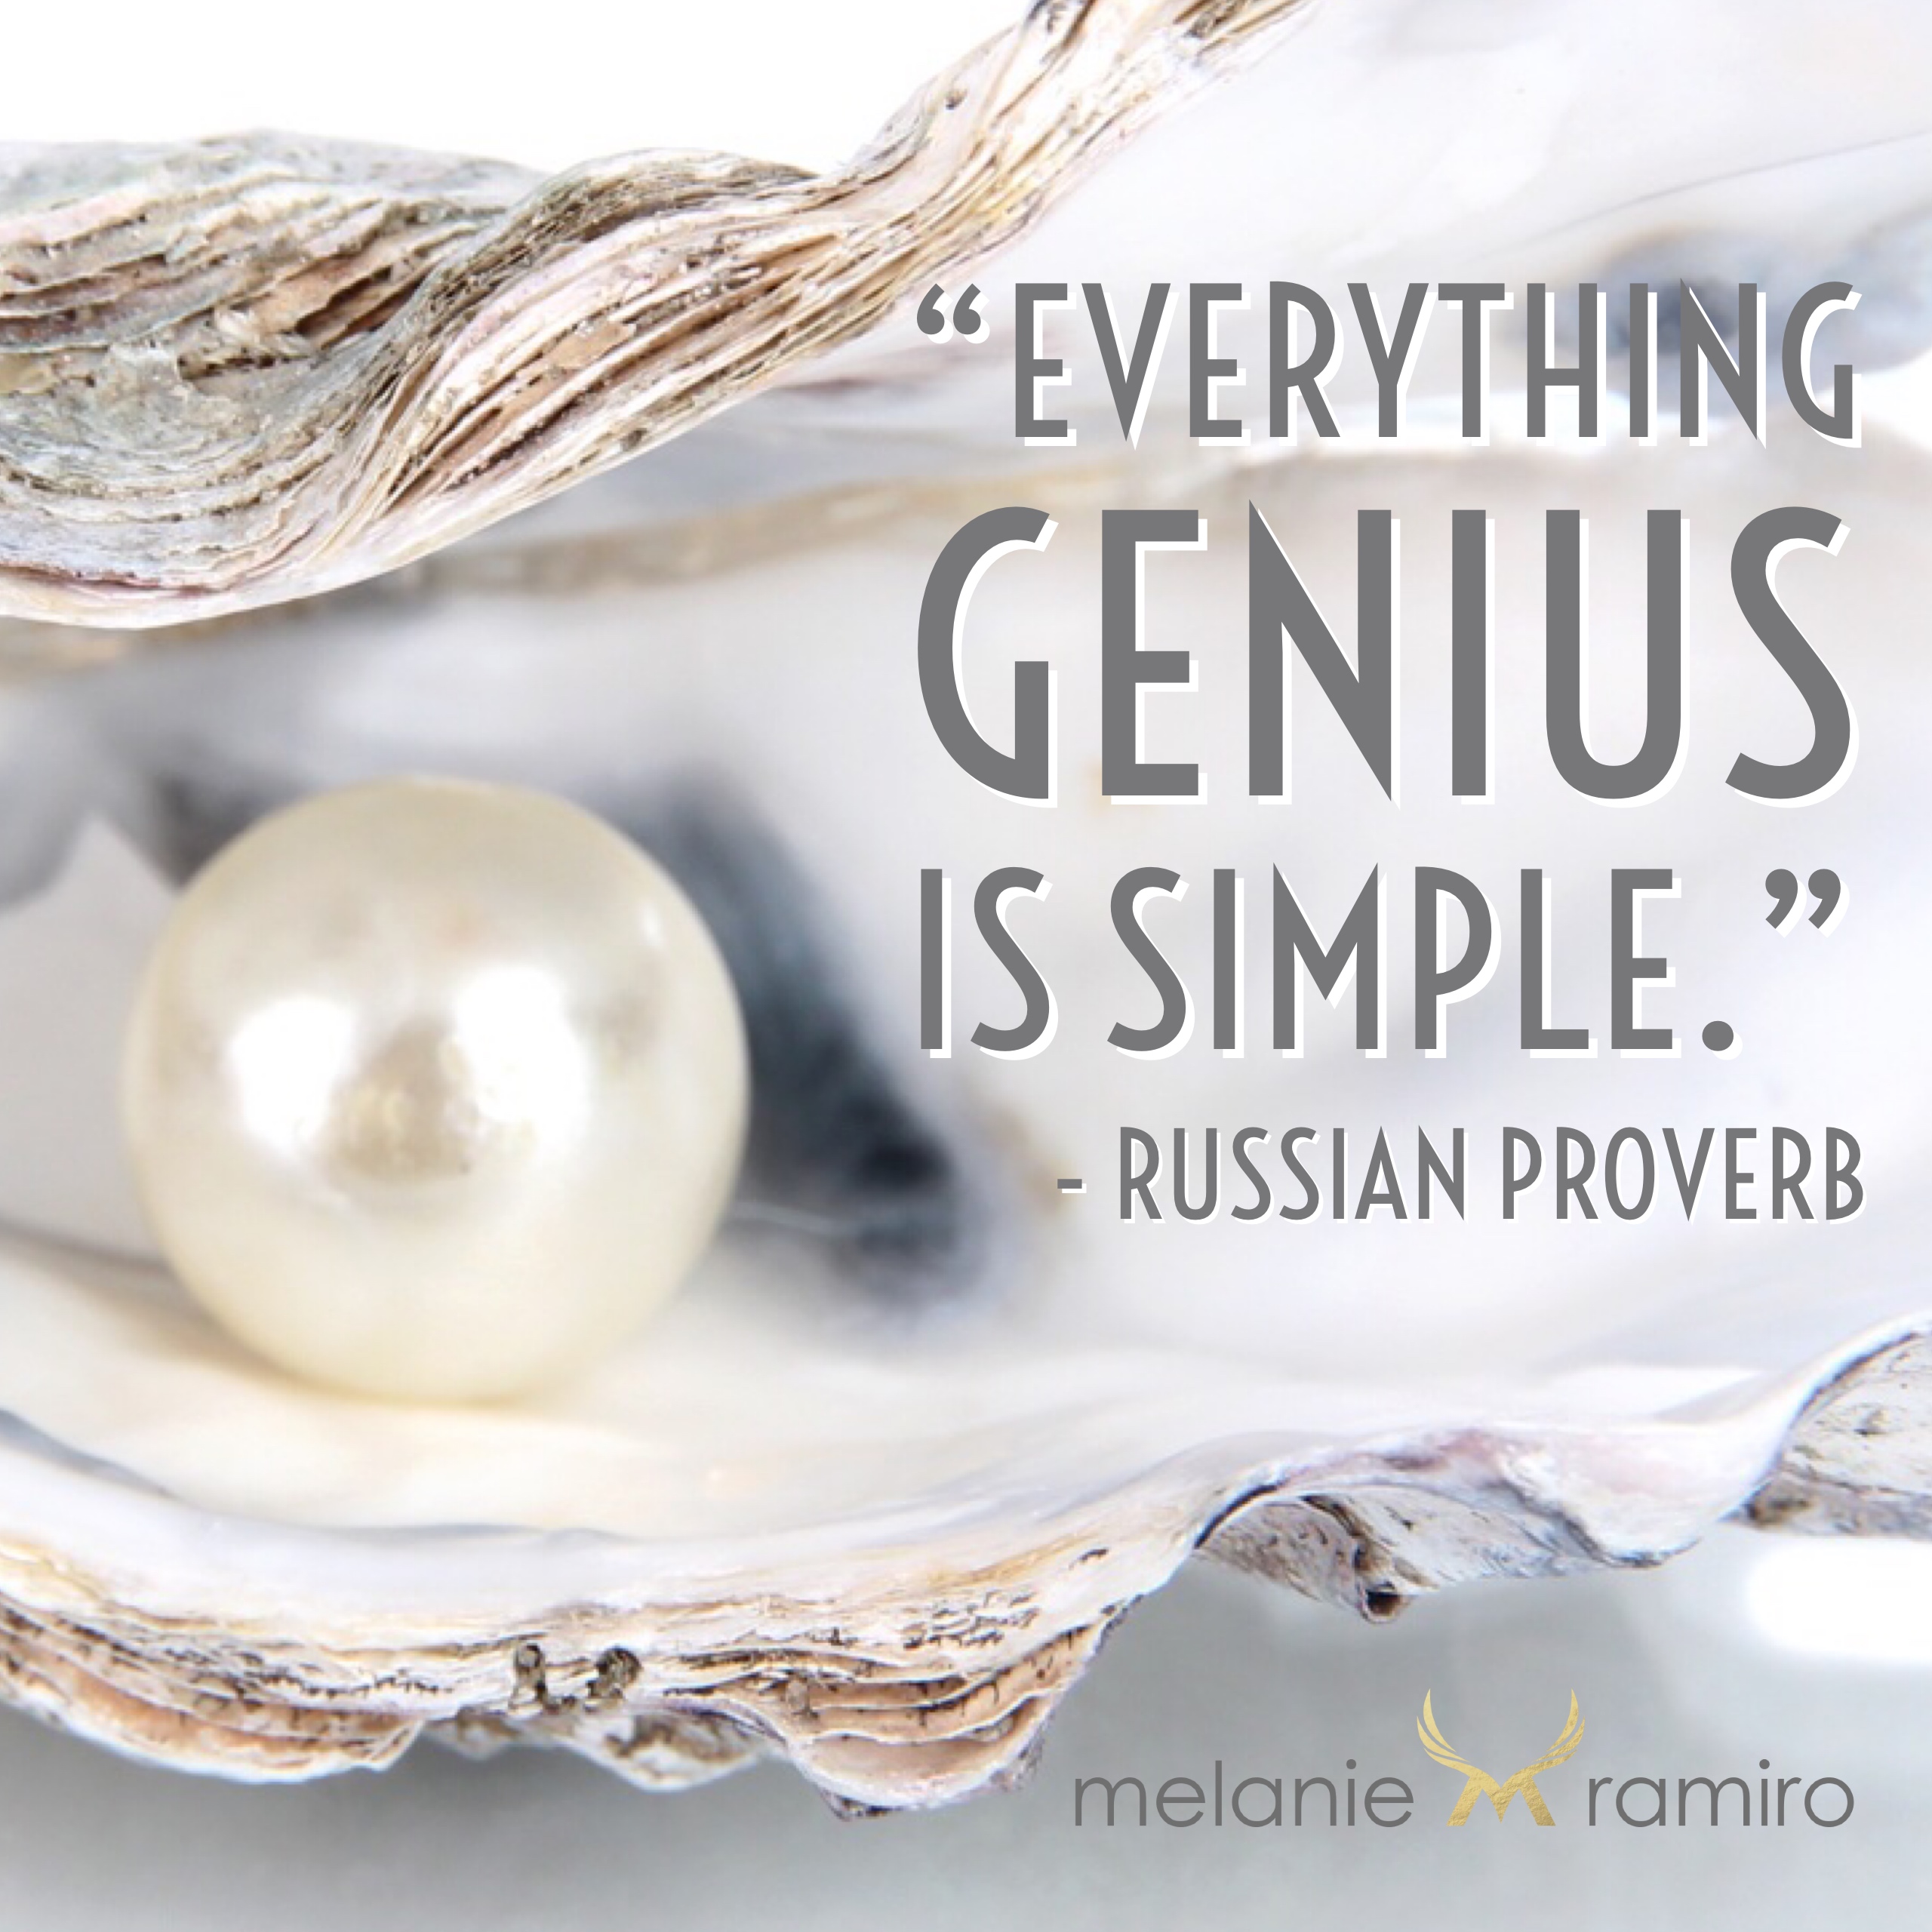 Everything genius is simple